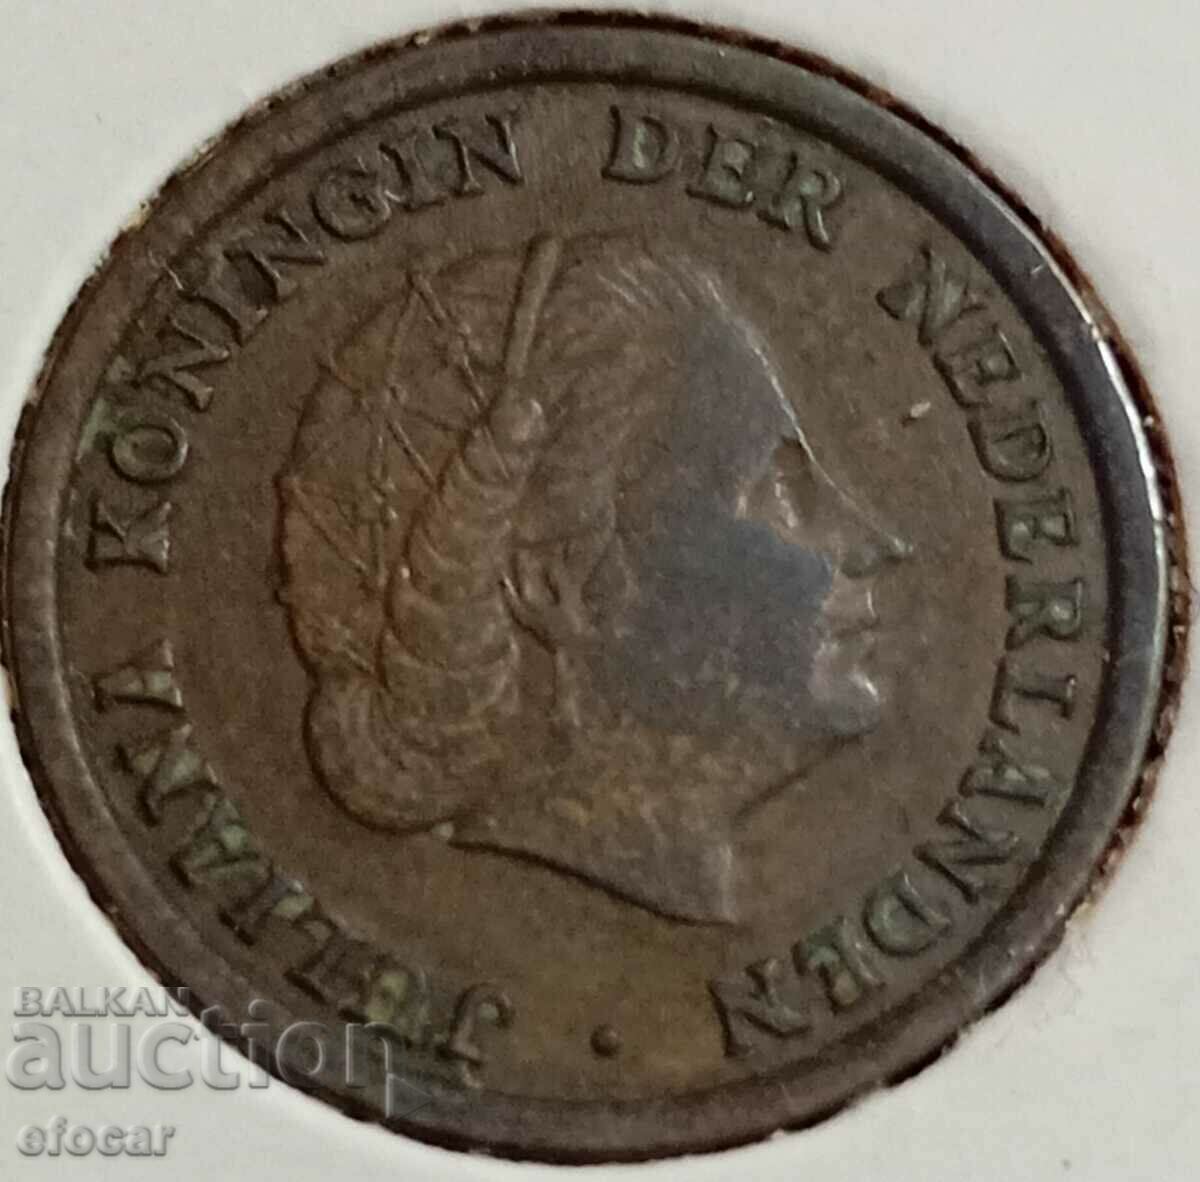 1 cent Ολλανδία 1962